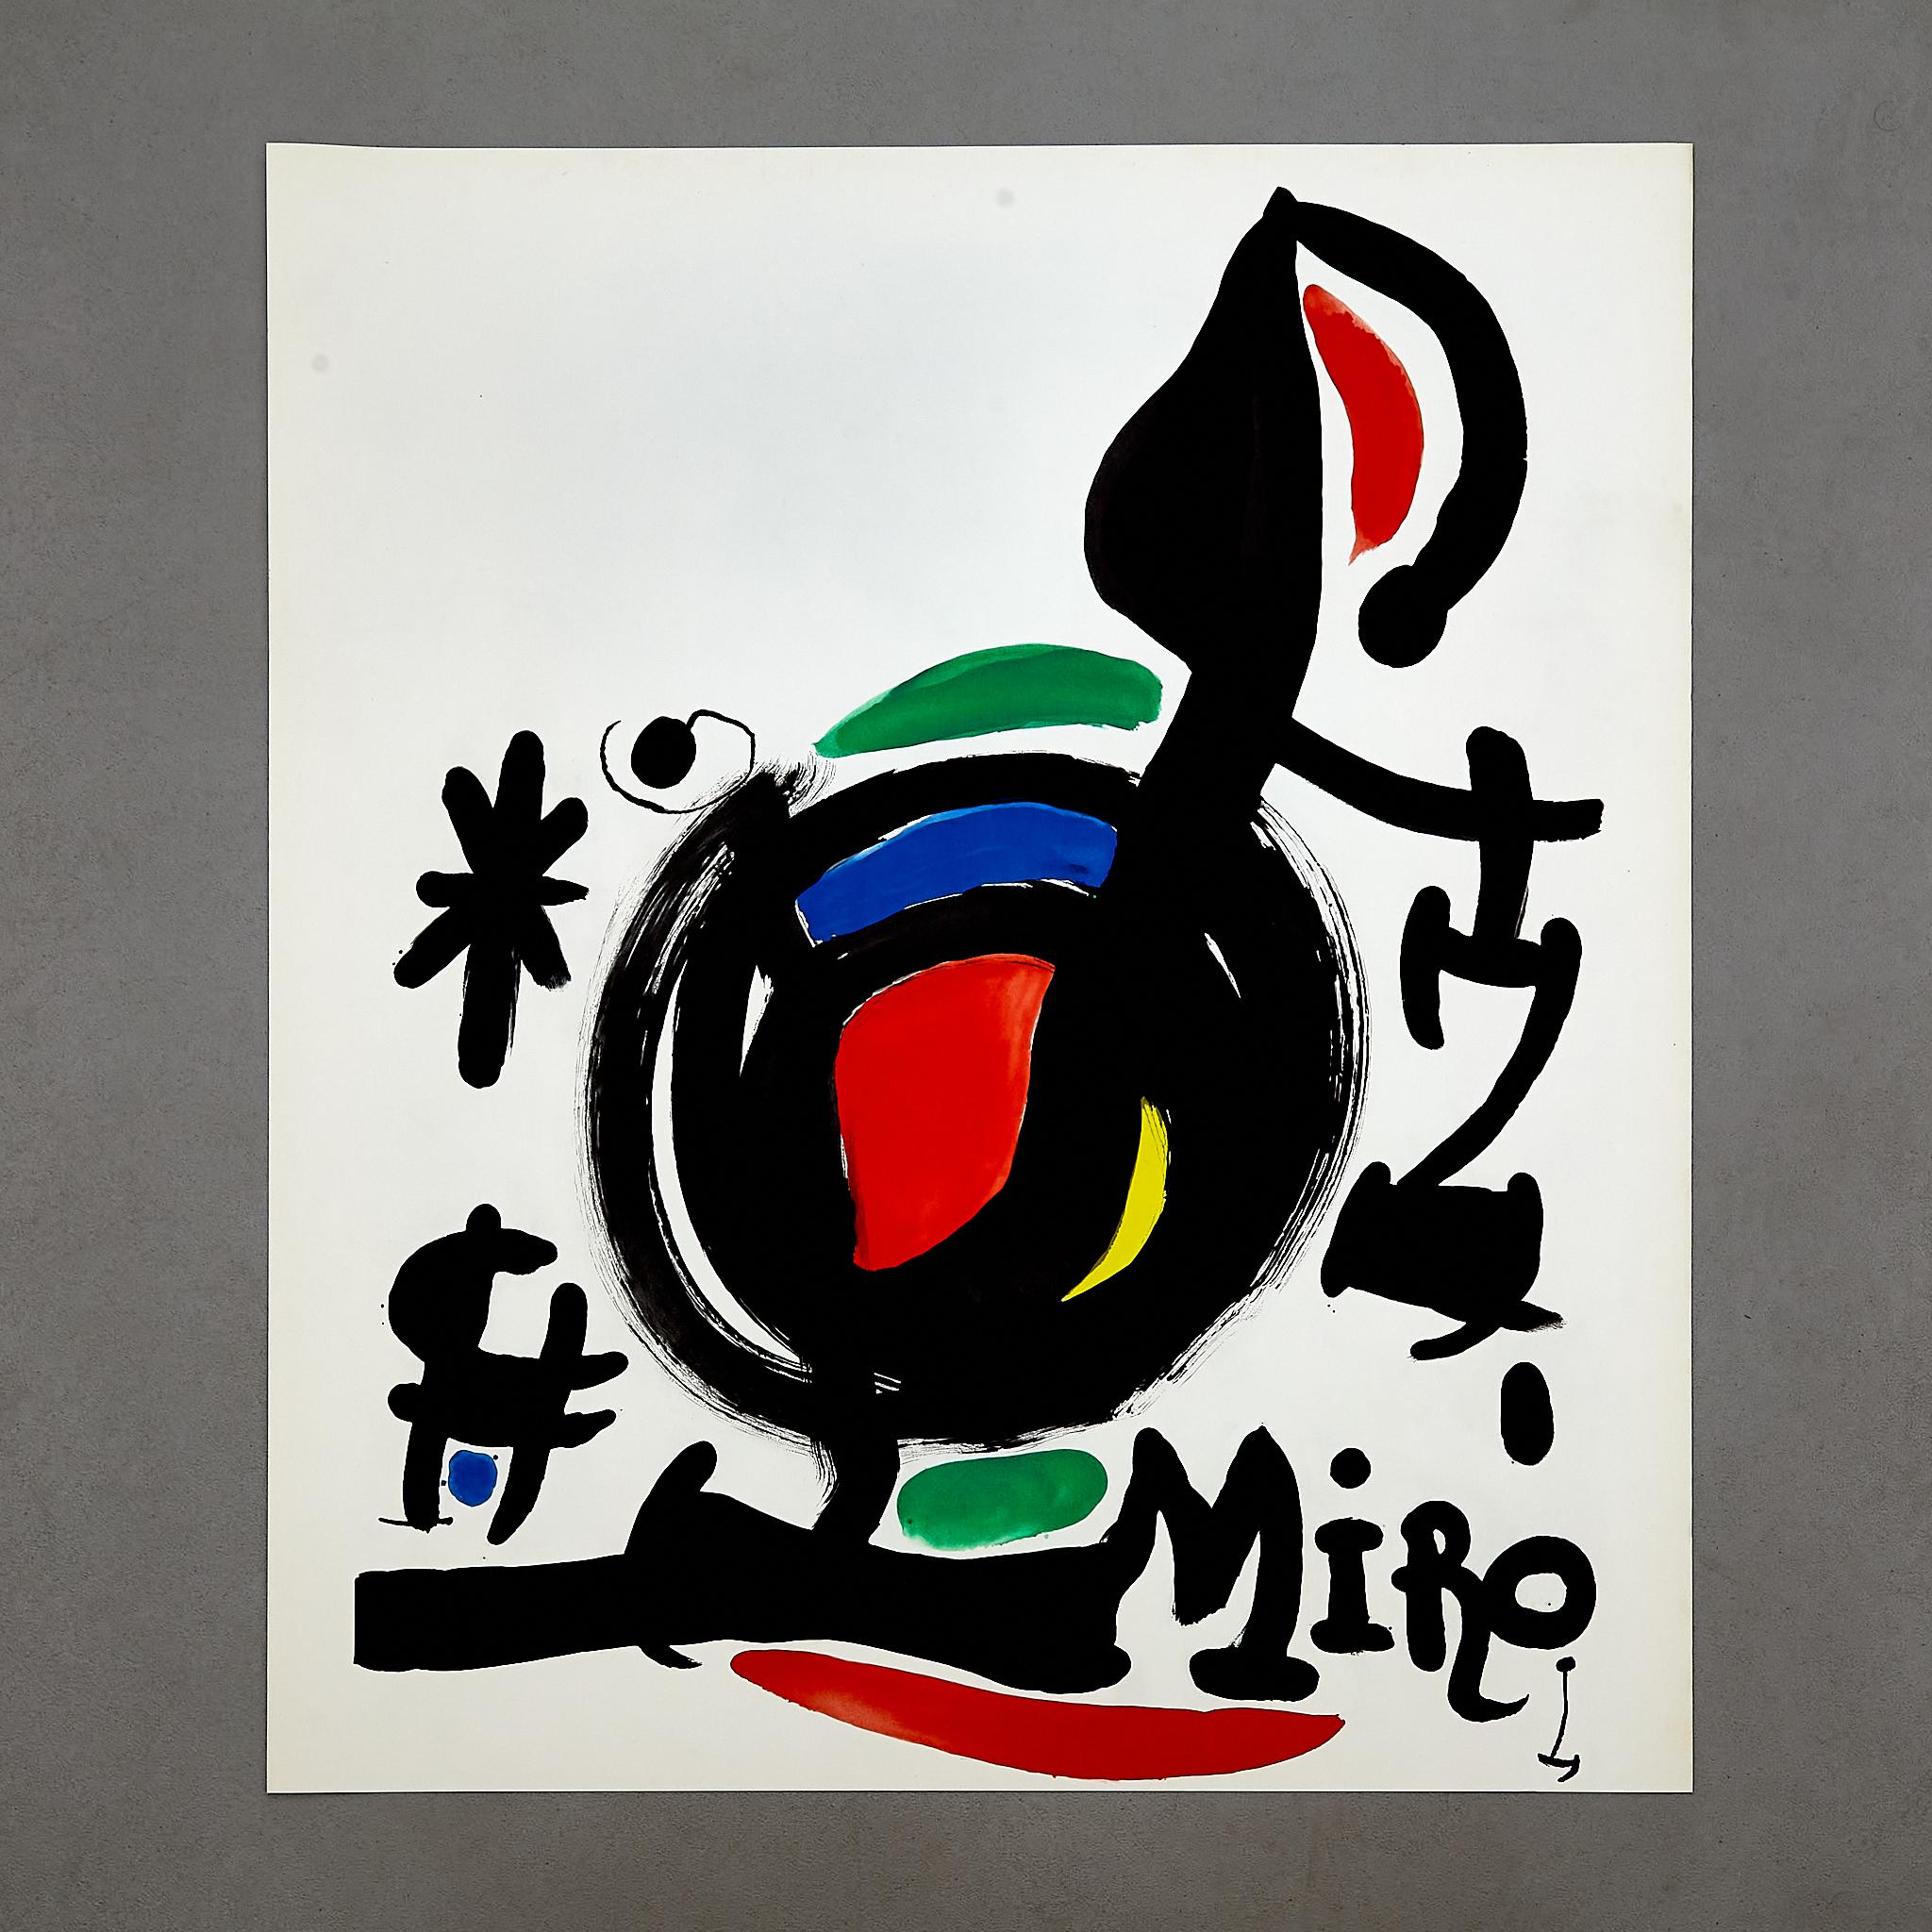 Lithographie couleur de haute qualité de Joan Miró.

Fabriqué en Espagne, vers 1969.

En état d'origine avec une usure mineure conforme à l'âge et à l'utilisation, préservant une belle patine.

Signé sur la pierre

Matériaux : 
Papier 

Dimensions :